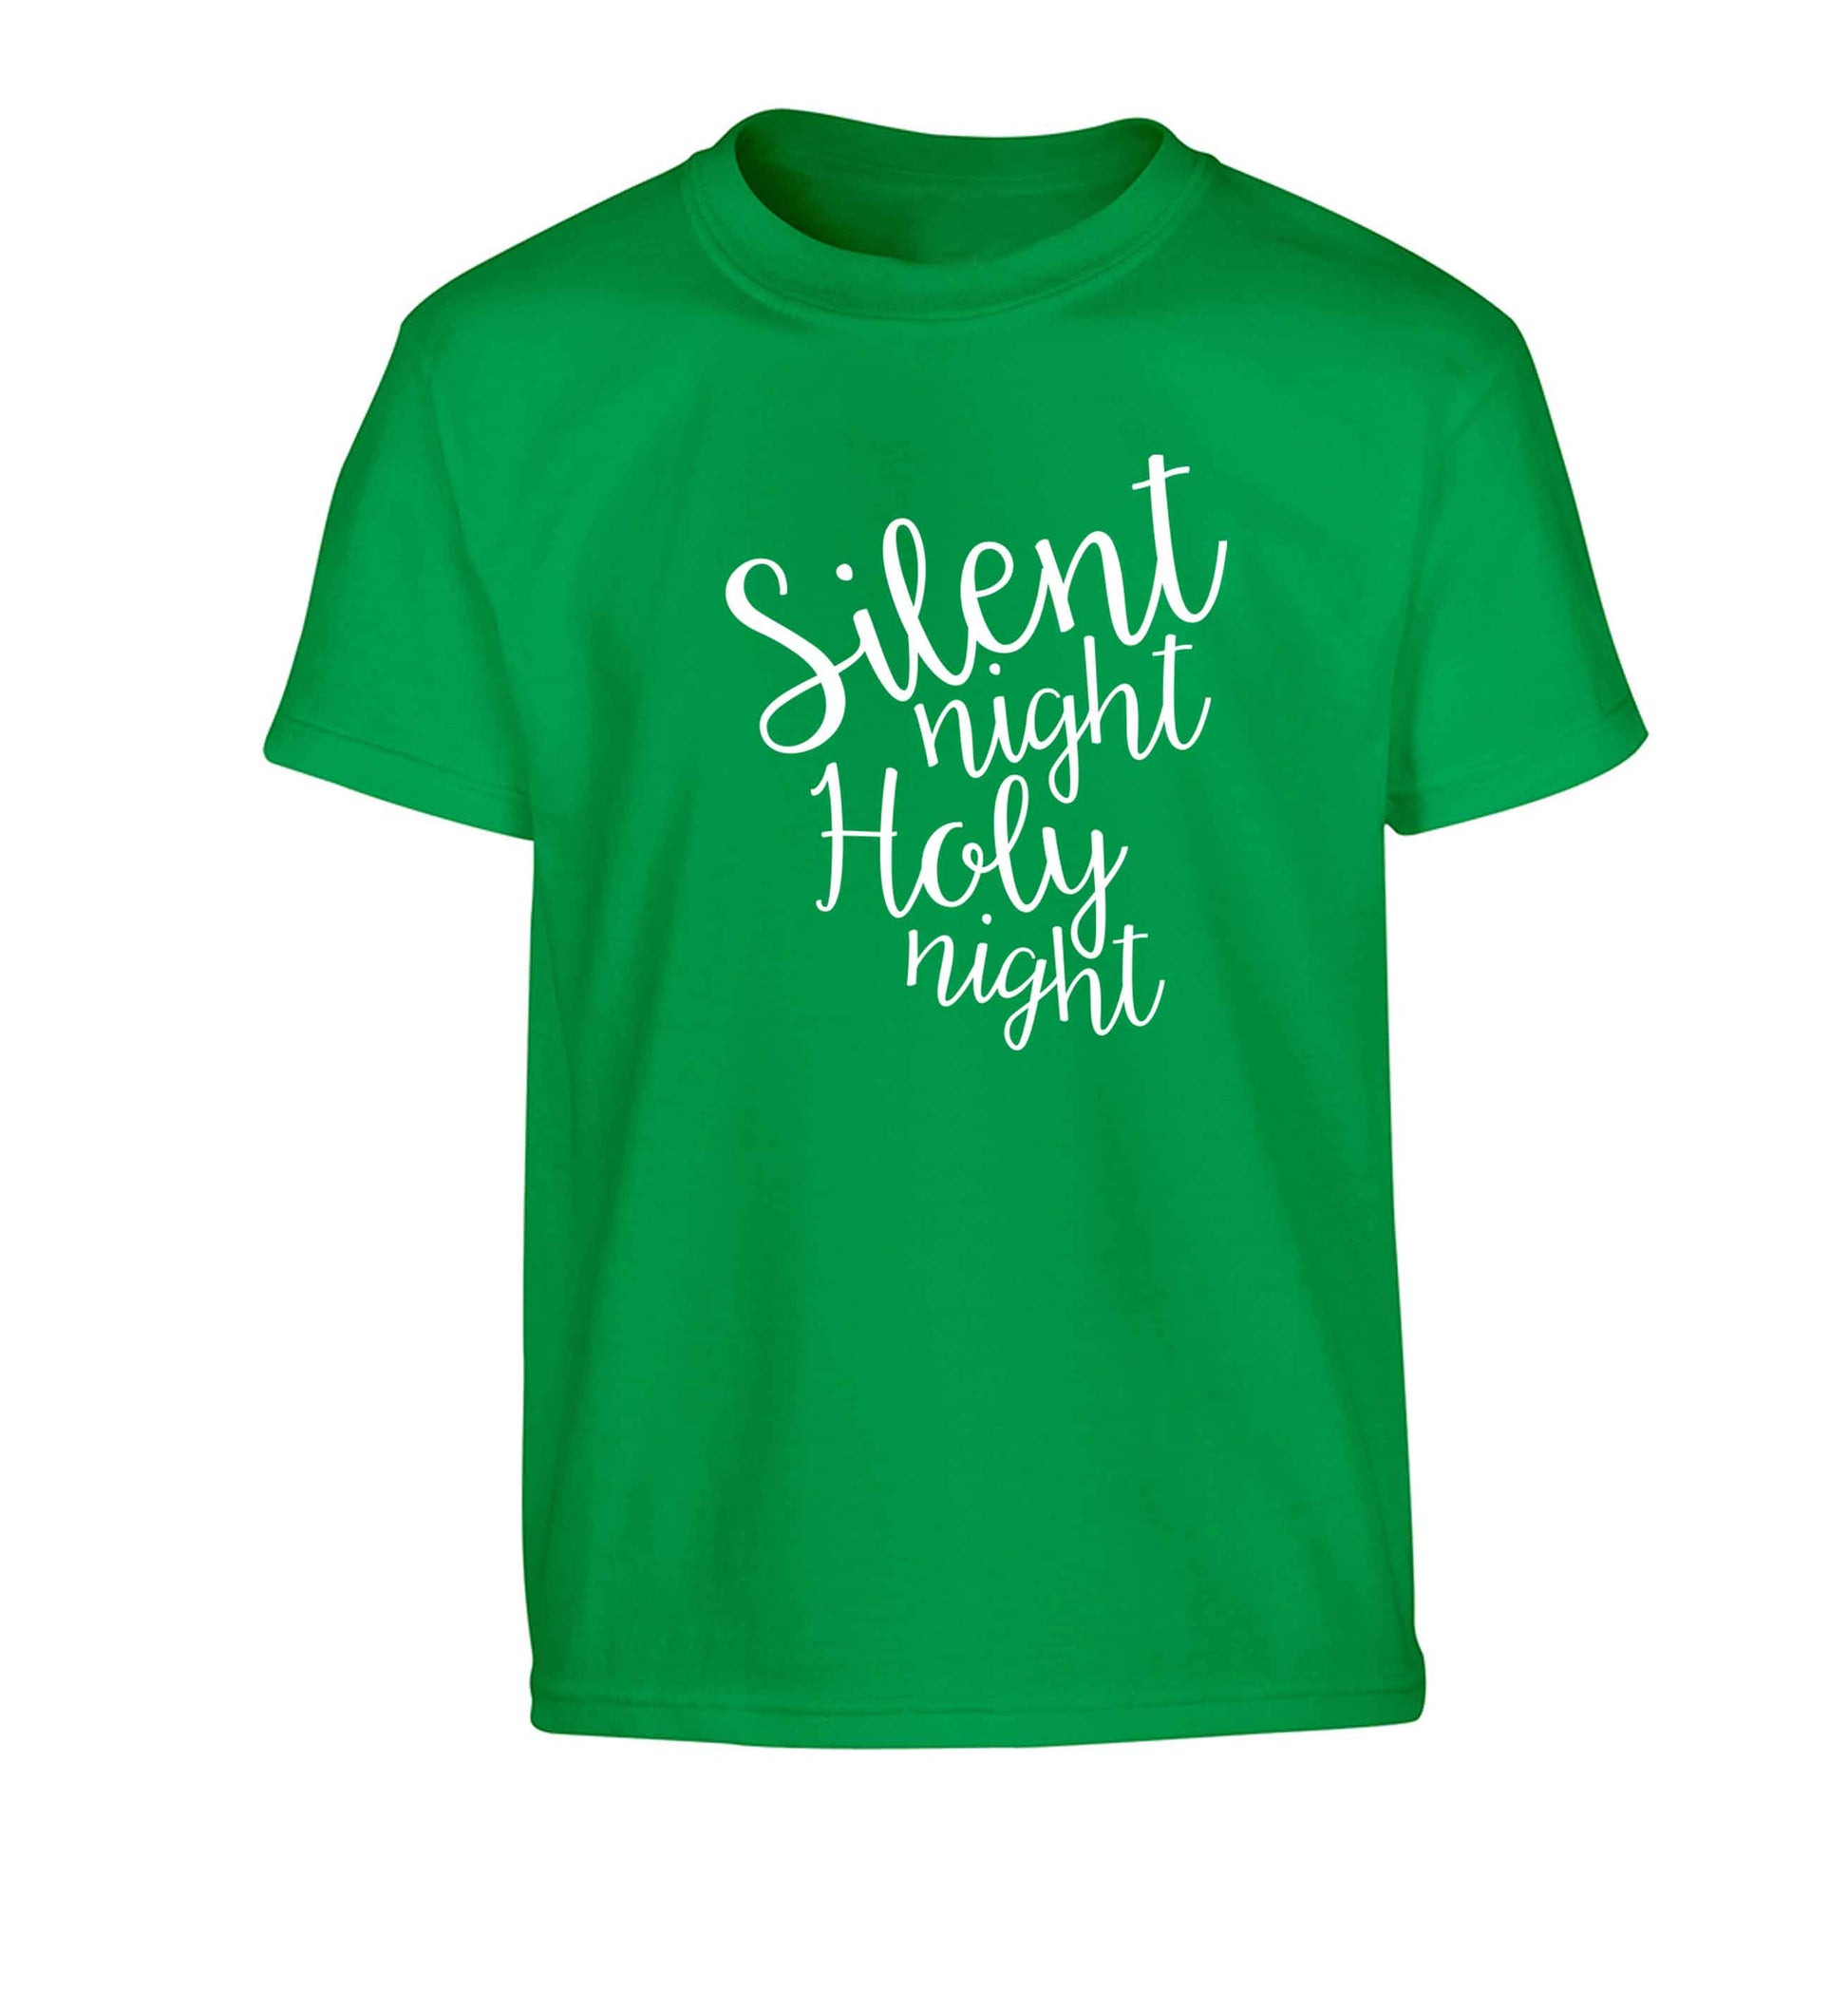 Silent night holy night Children's green Tshirt 12-13 Years